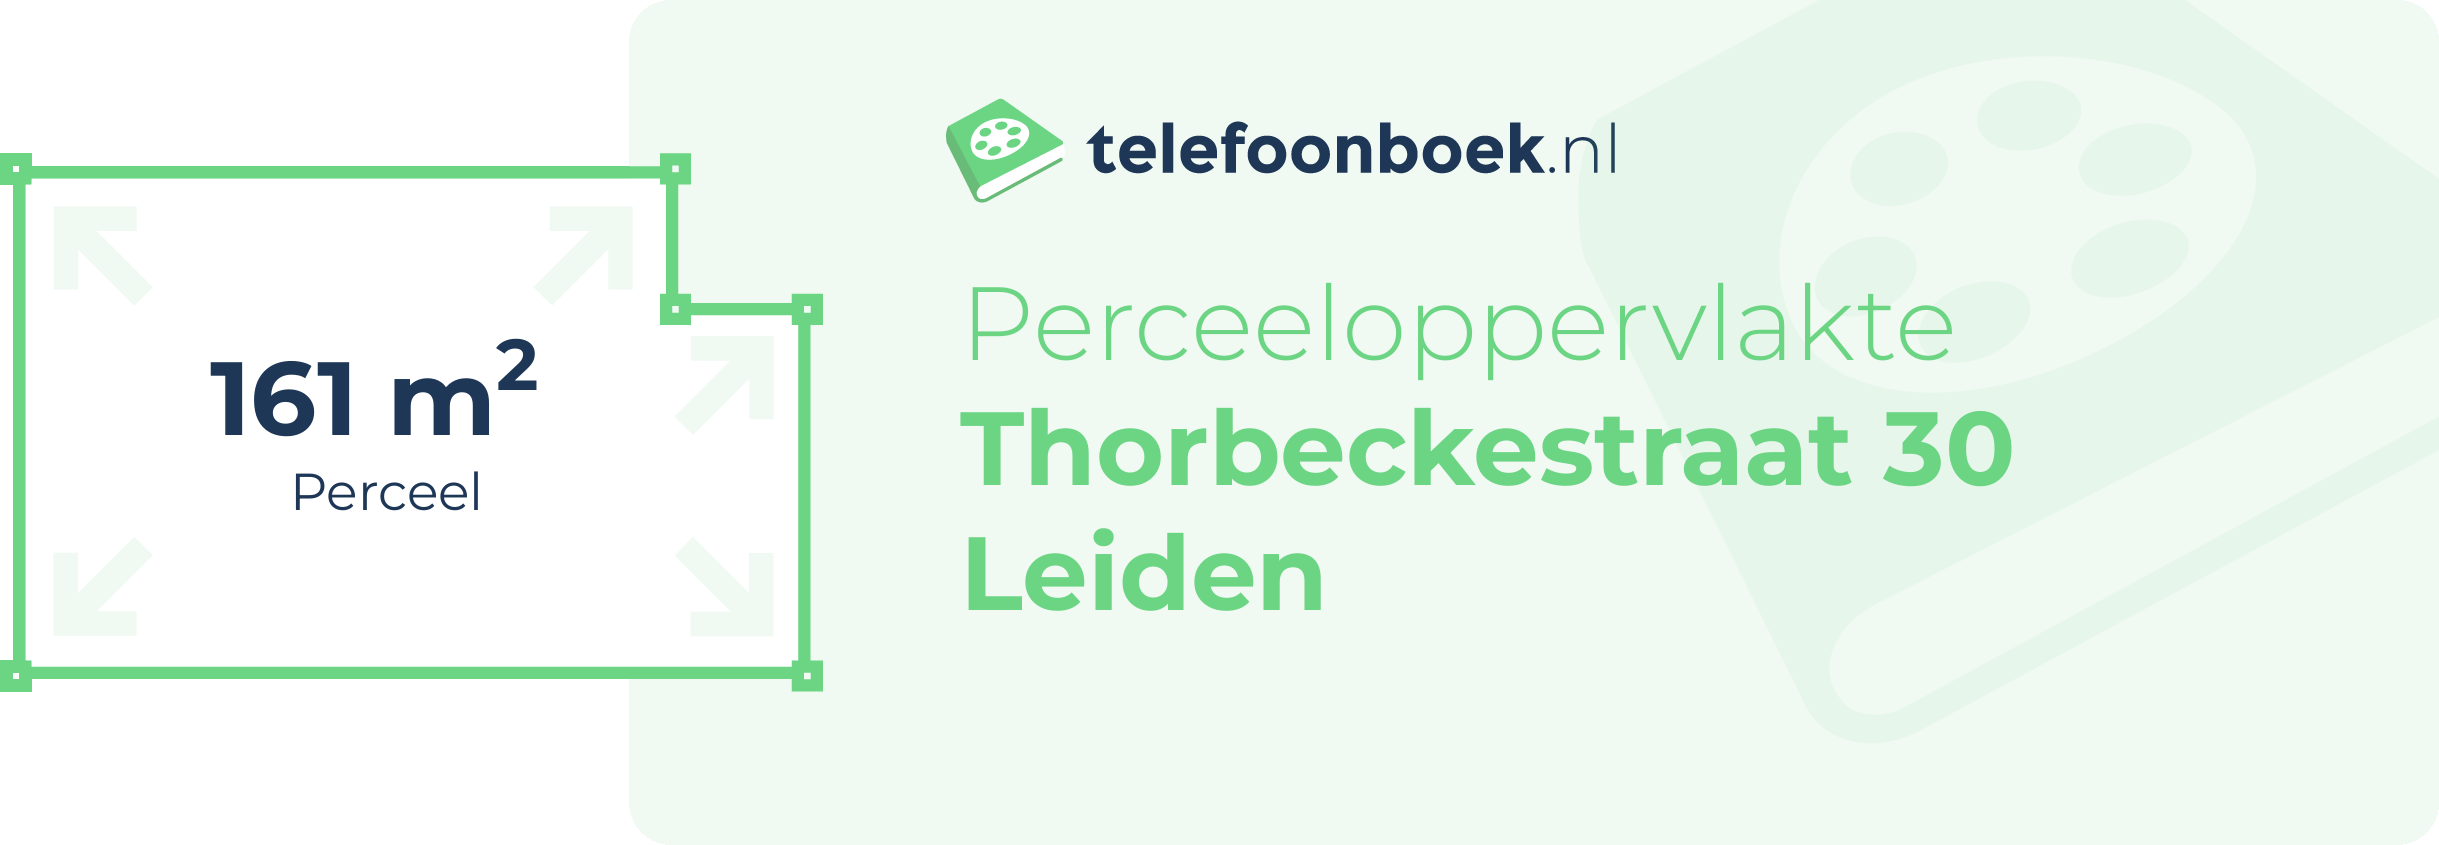 Perceeloppervlakte Thorbeckestraat 30 Leiden